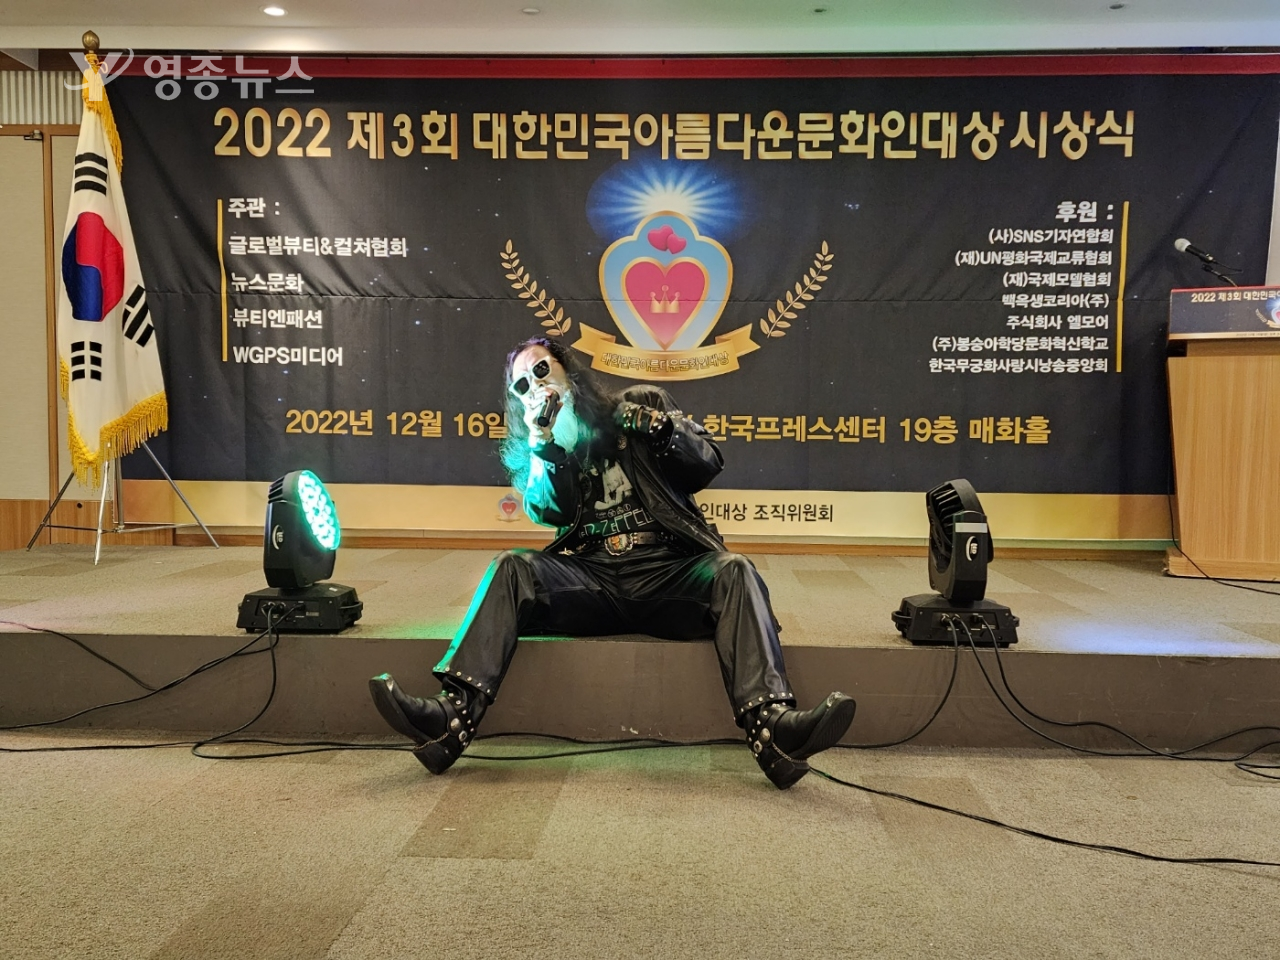 2022 제3회 대한민국아름다운문화인대상 시상식' 개최, 재미 락 가수 마이클 이재호의 축하곡